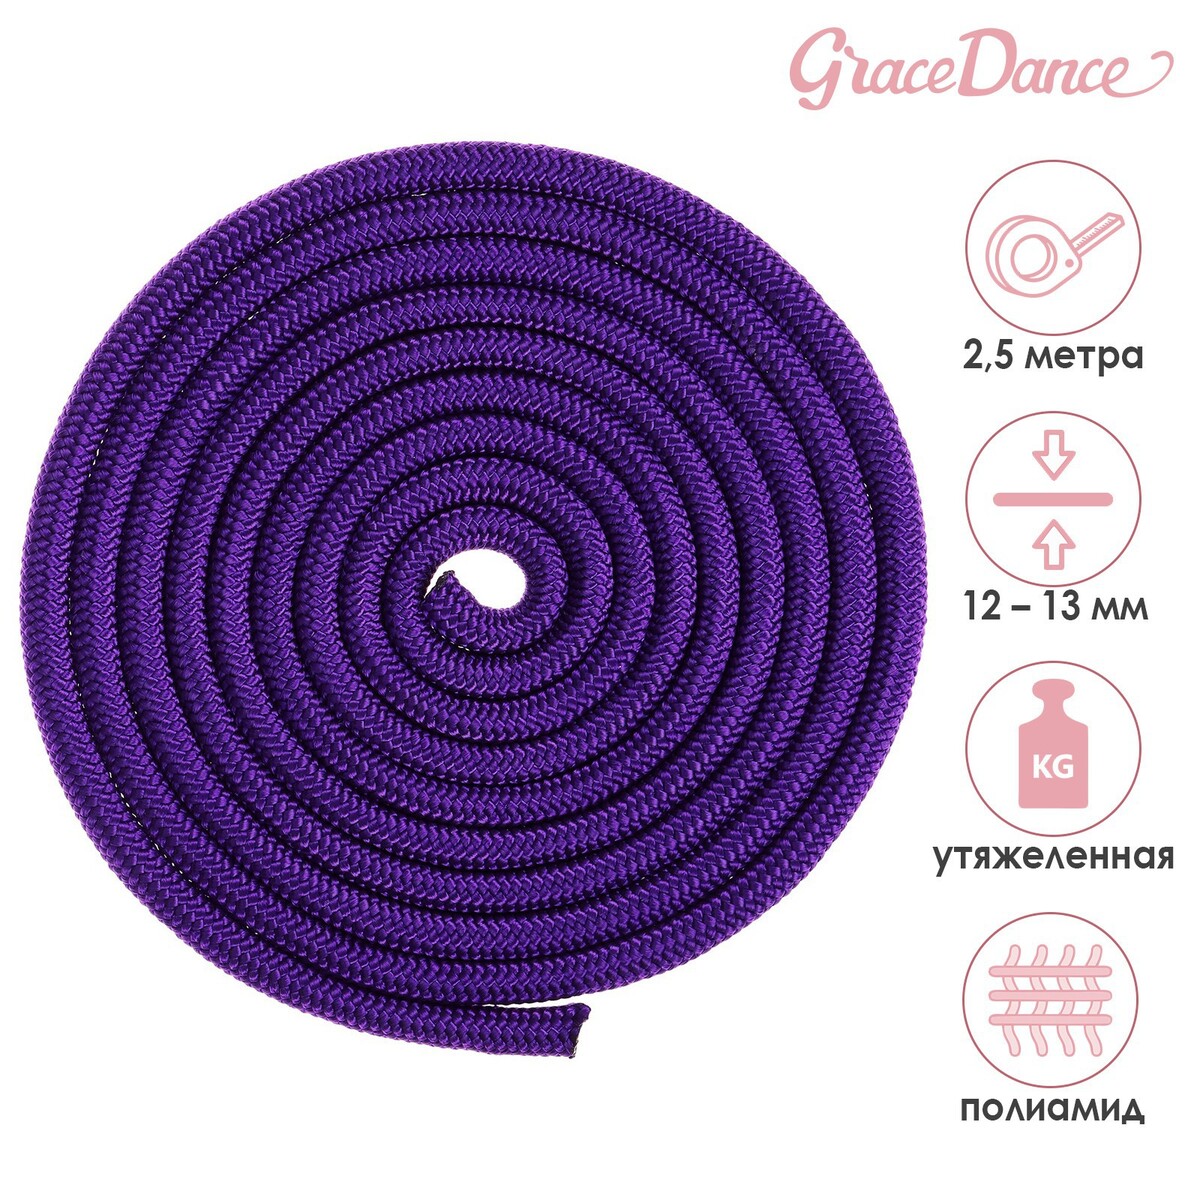 Скакалка для художественной гимнастики утяжеленная grace dance, 2,5 м, цвет фиолетовый скакалка гимнастическая с люрексом body form bf sk03 bf jrgl01 фиолетовый